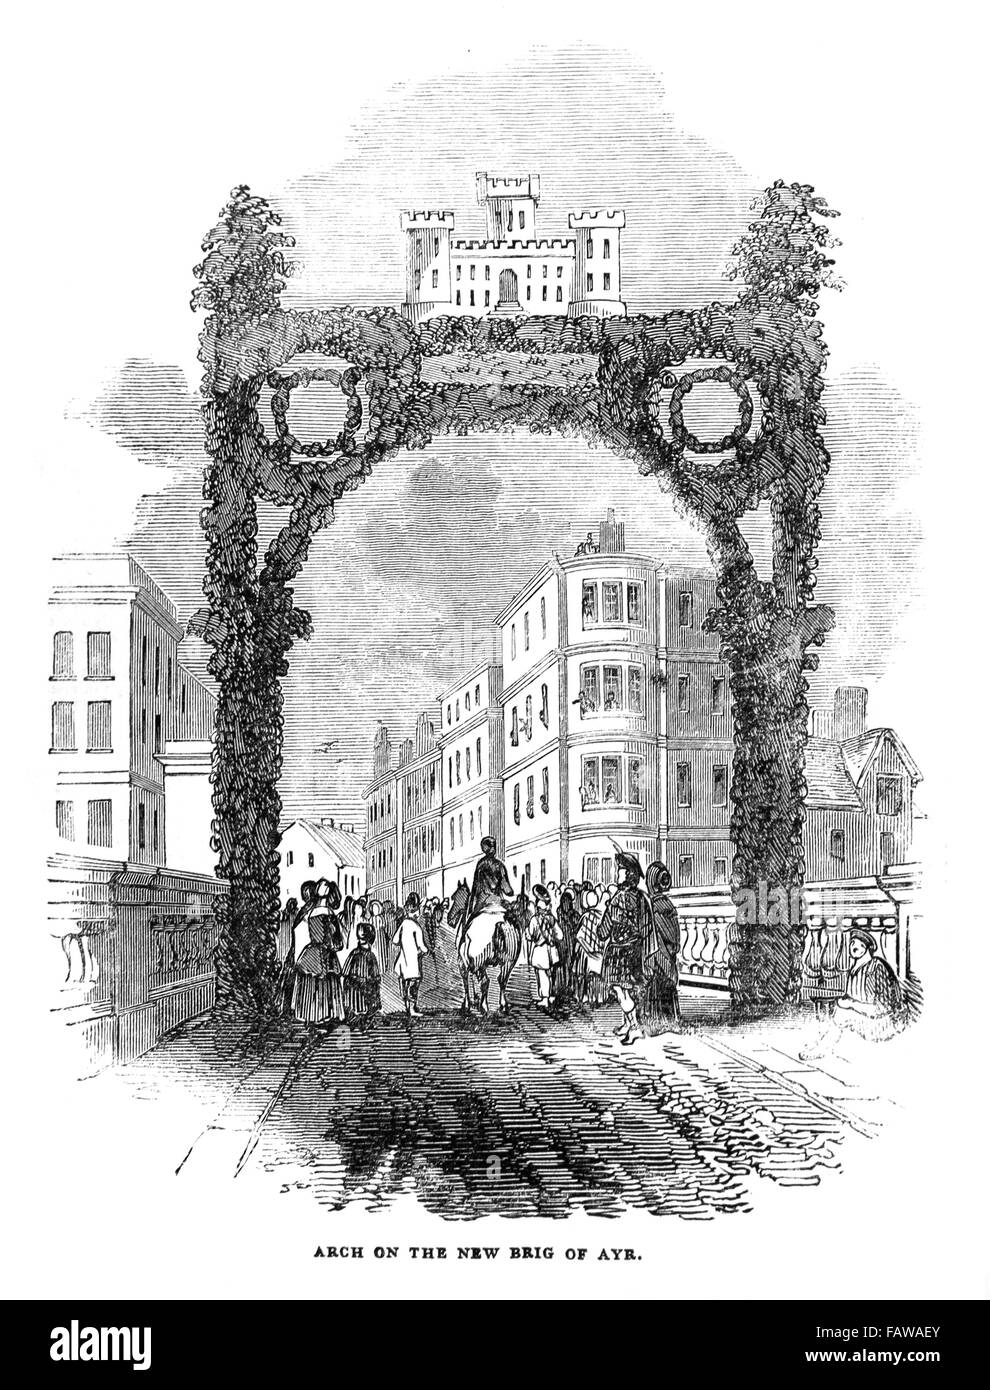 Arche décorée du nouveau pont d'Ayr, Burns Festival Août 1844 ; Illustrated London News Juillet 1844 ; B&W Illustration Banque D'Images